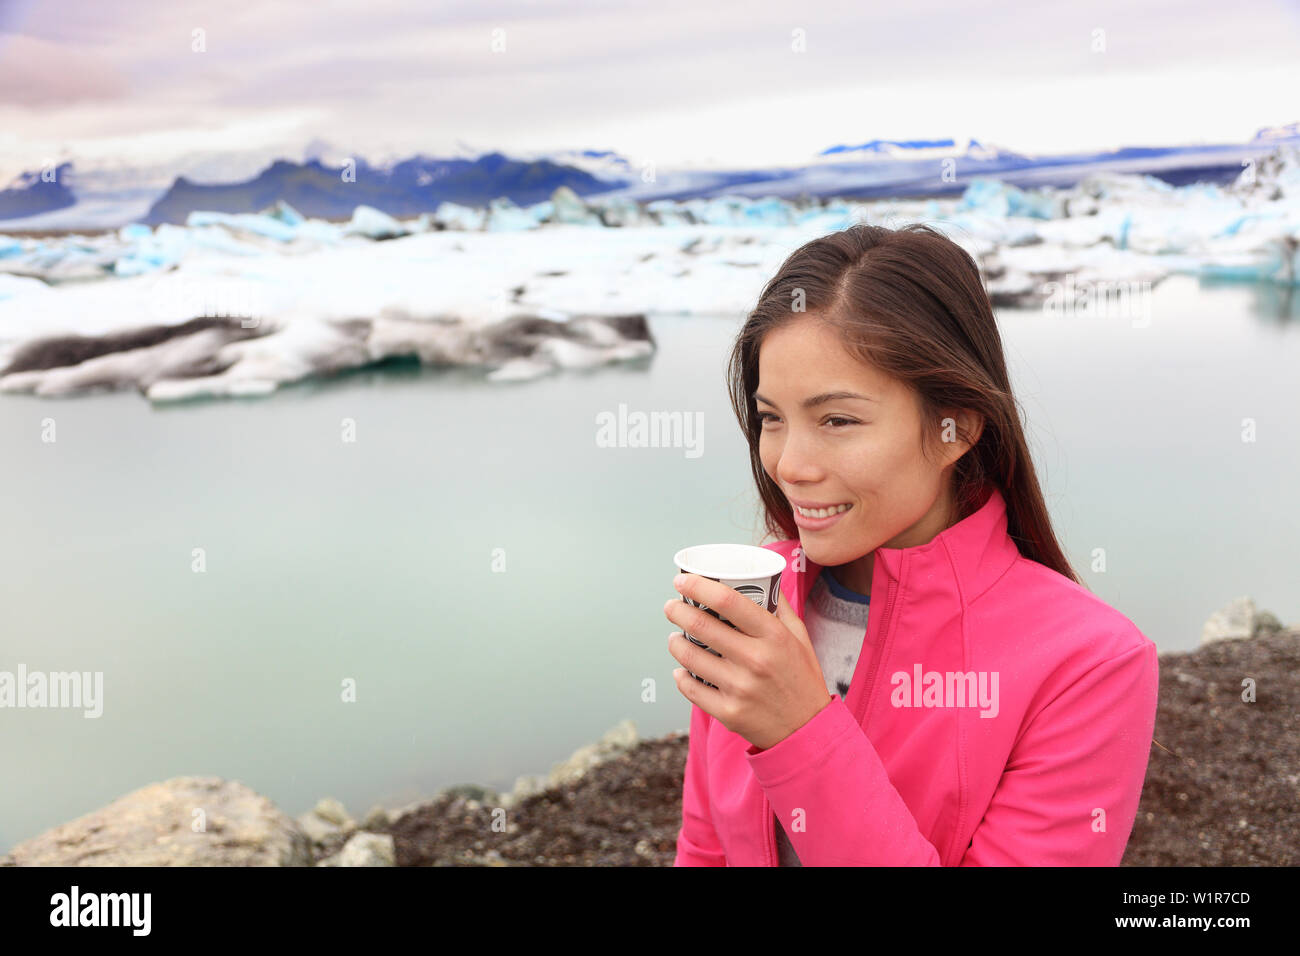 Femme buvant du café sur les voyages Voyage à glacier lagoon sur l'Islande. Happy tourist woman enjoying view de Jokulsarlon Glacial lake. Femme souriante dans le magnifique paysage de la nature islandaise avec des icebergs. Banque D'Images